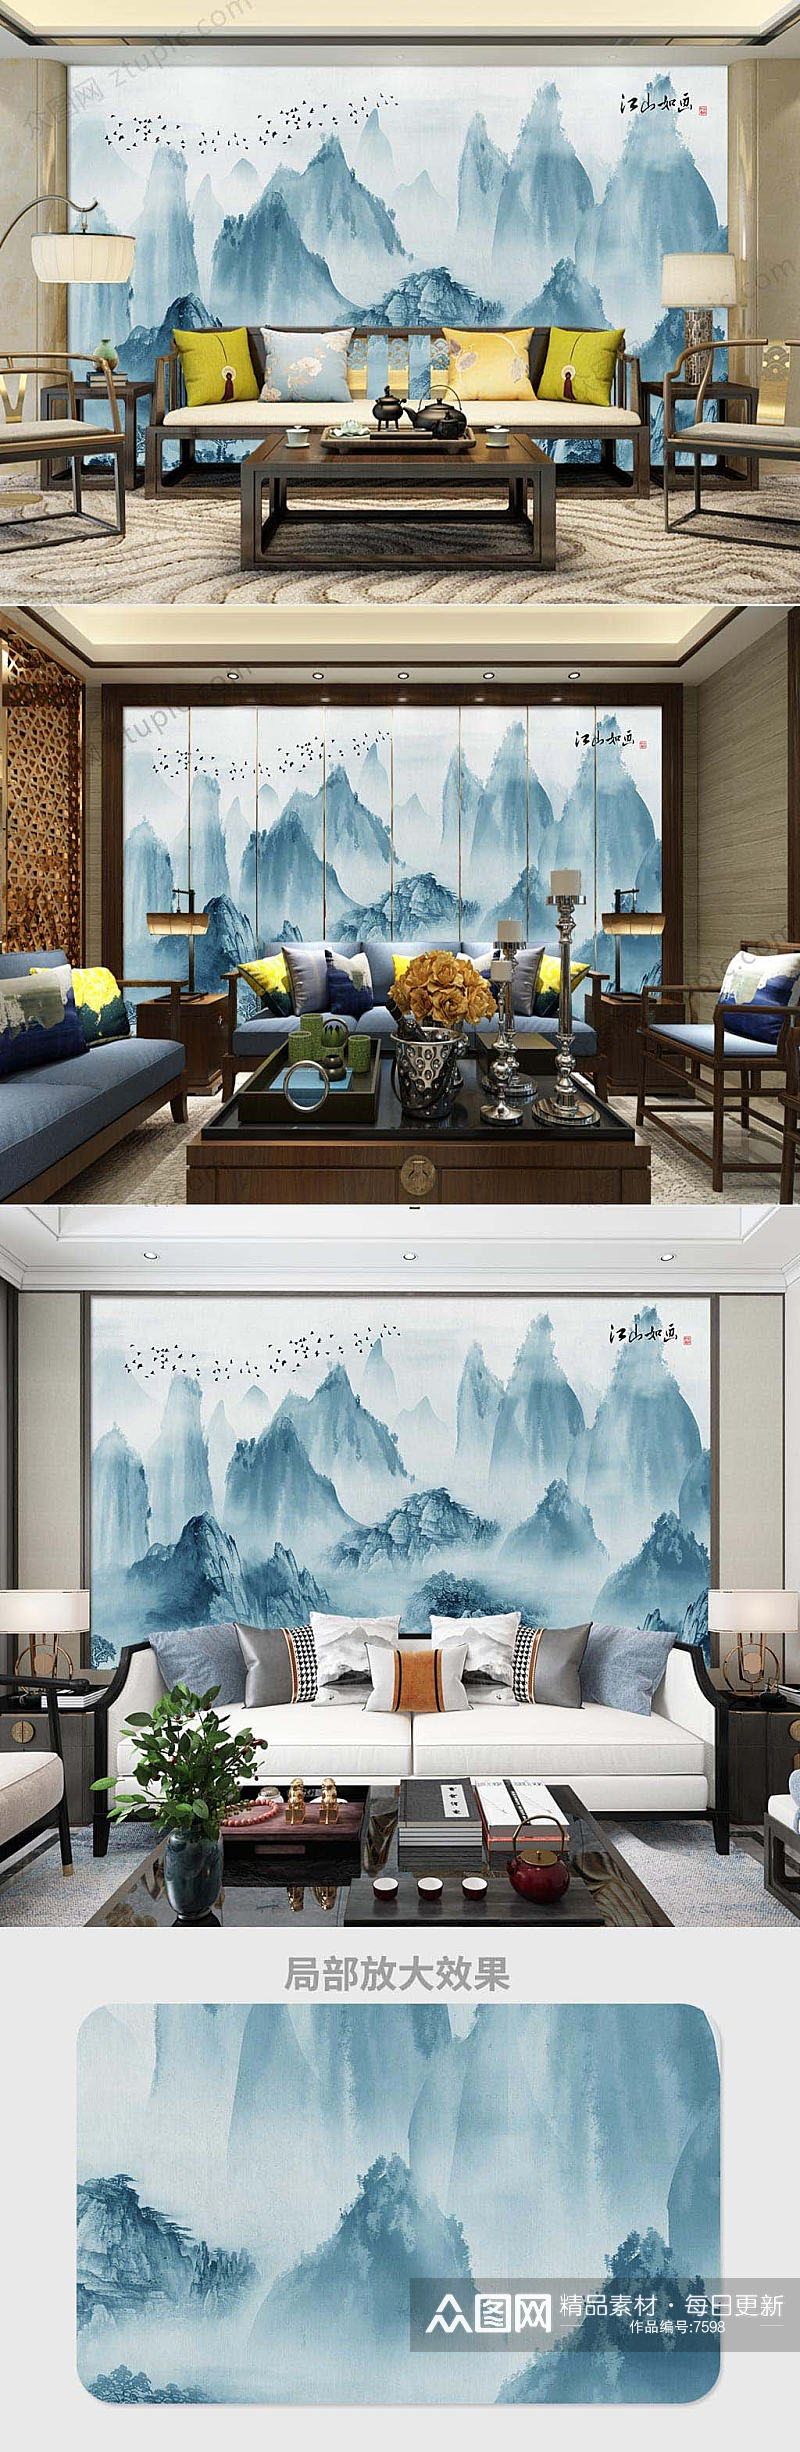 中式意境山峦客厅生活背景墙素材